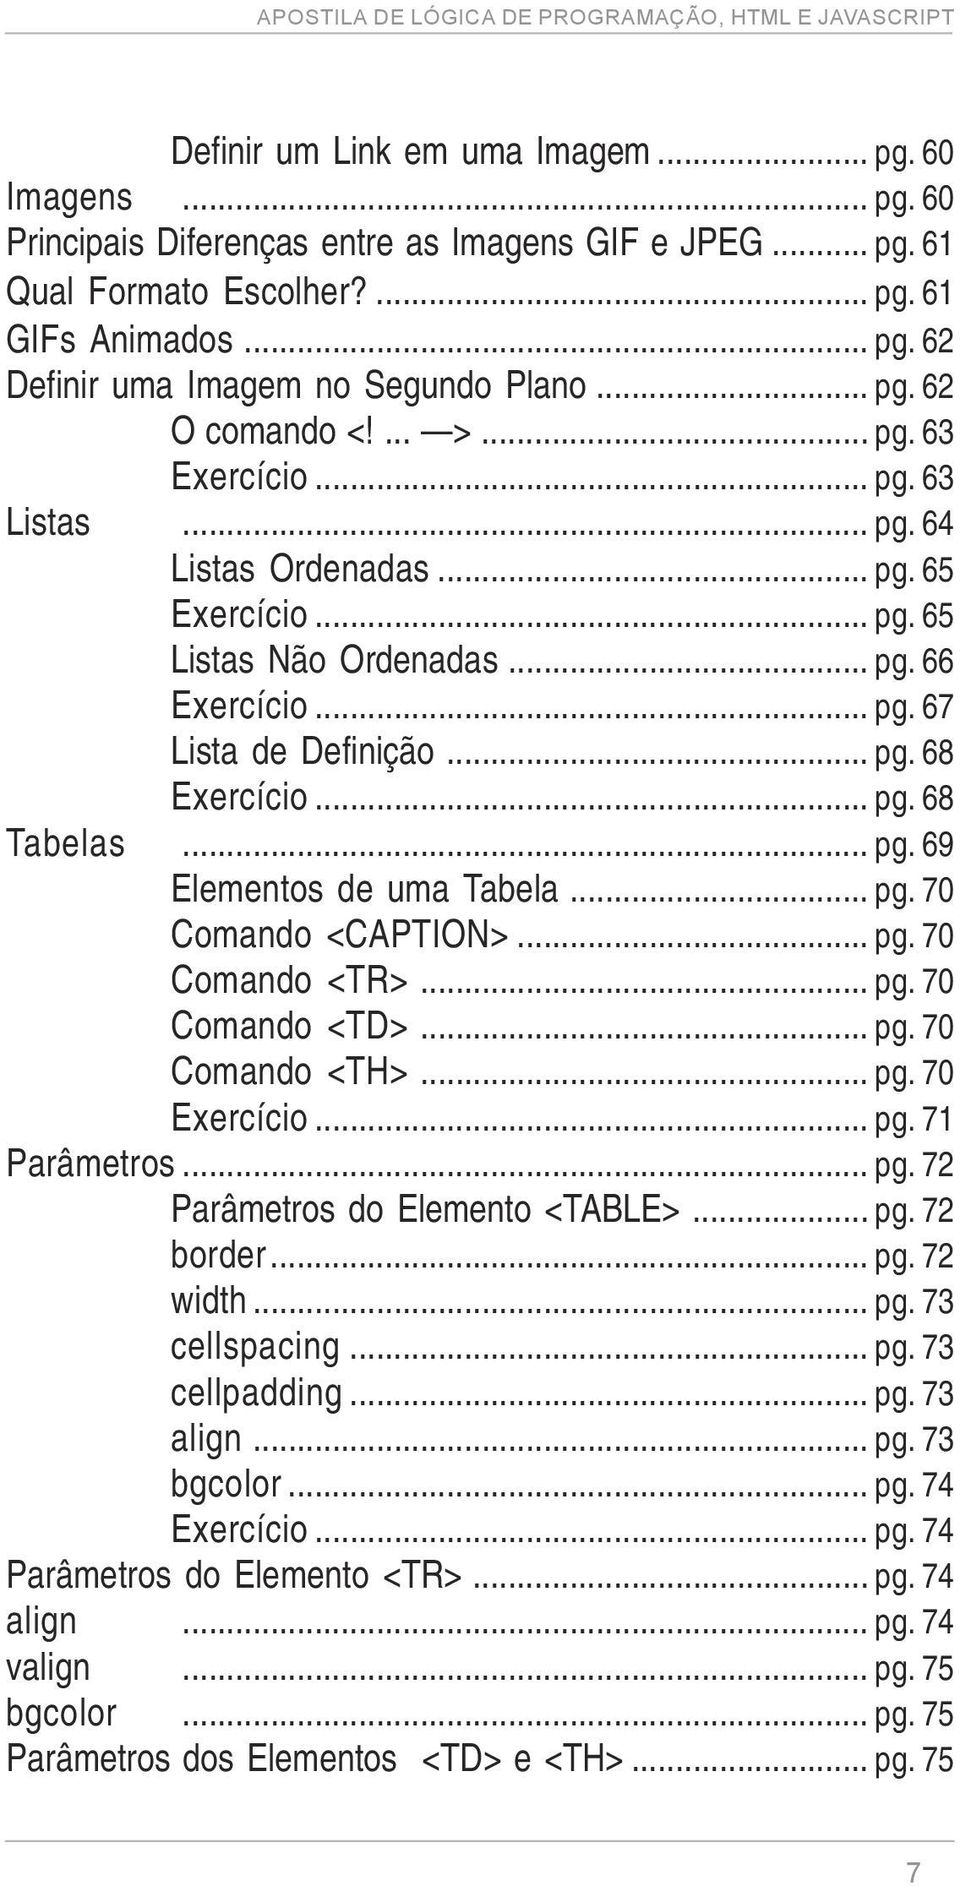 .. pg. 68 Tabelas... pg. 69 Elementos de uma Tabela... pg. 70 Comando <CAPTION>... pg. 70 Comando <TR>... pg. 70 Comando <TD>... pg. 70 Comando <TH>... pg. 70 Exercício... pg. 71 Parâmetros... pg. 72 Parâmetros do Elemento <TABLE>.